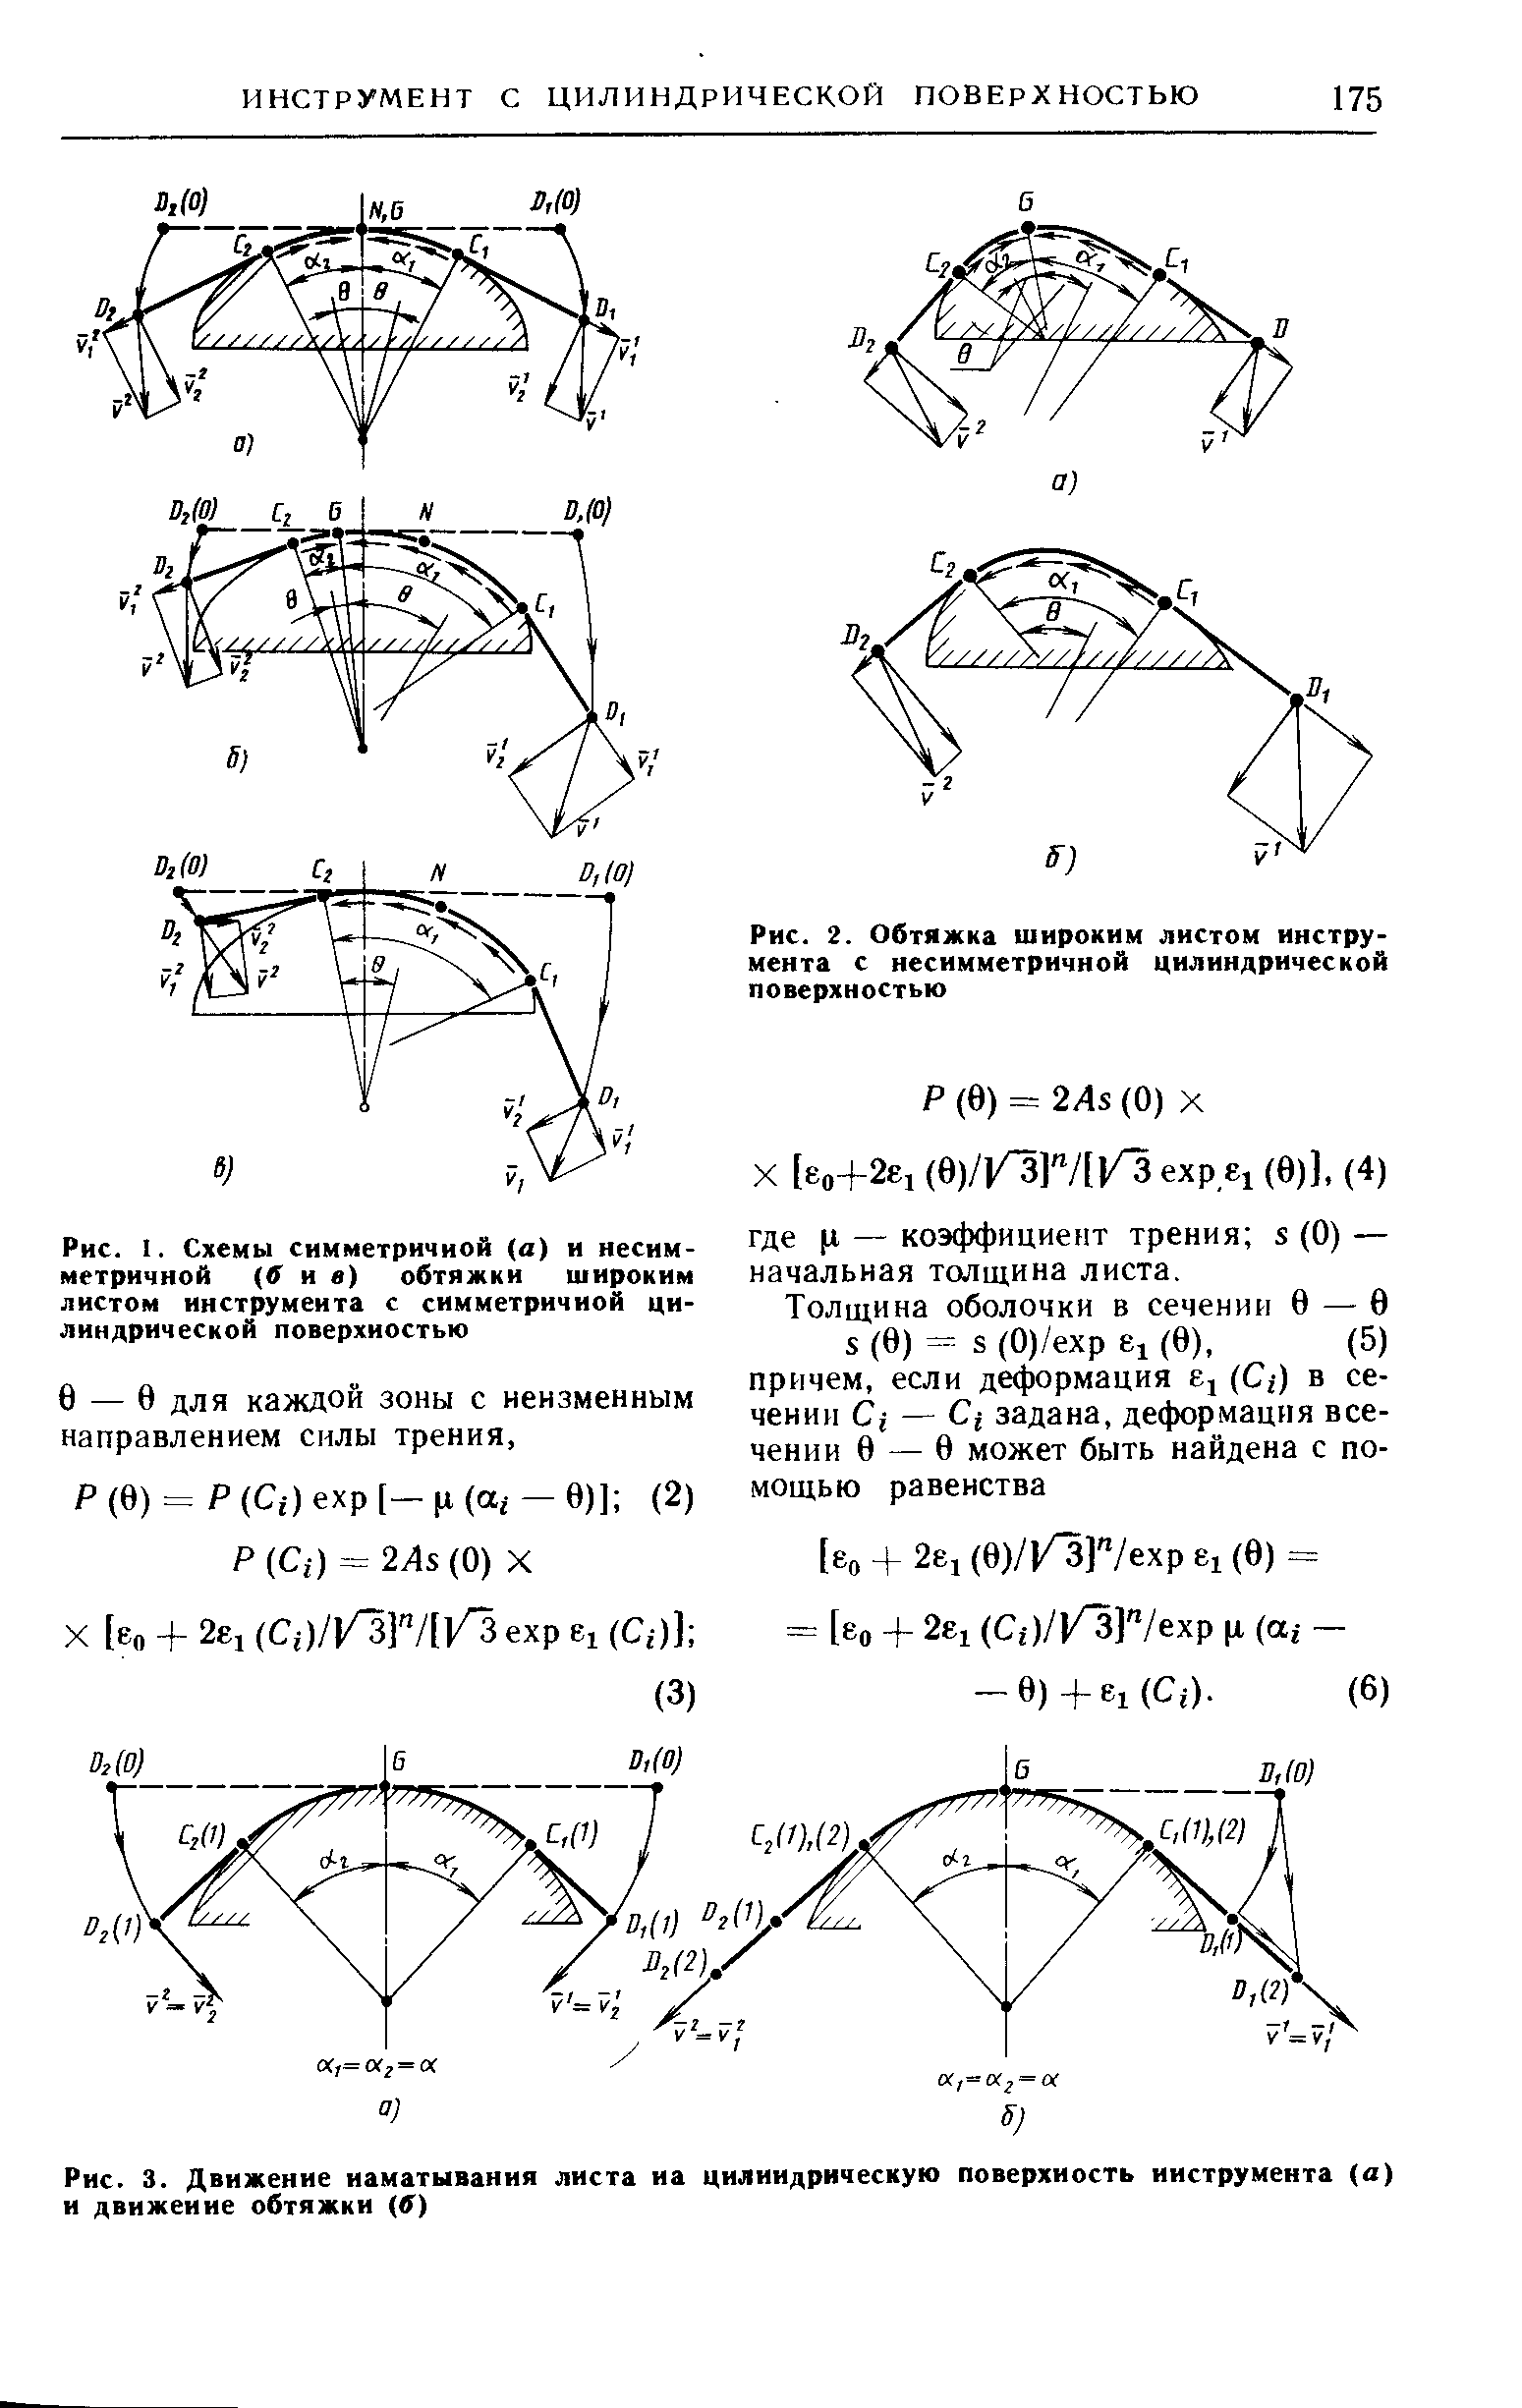 Рис. I. Схемы симметричной (а) и несим- Д коэффициент трения S (0)